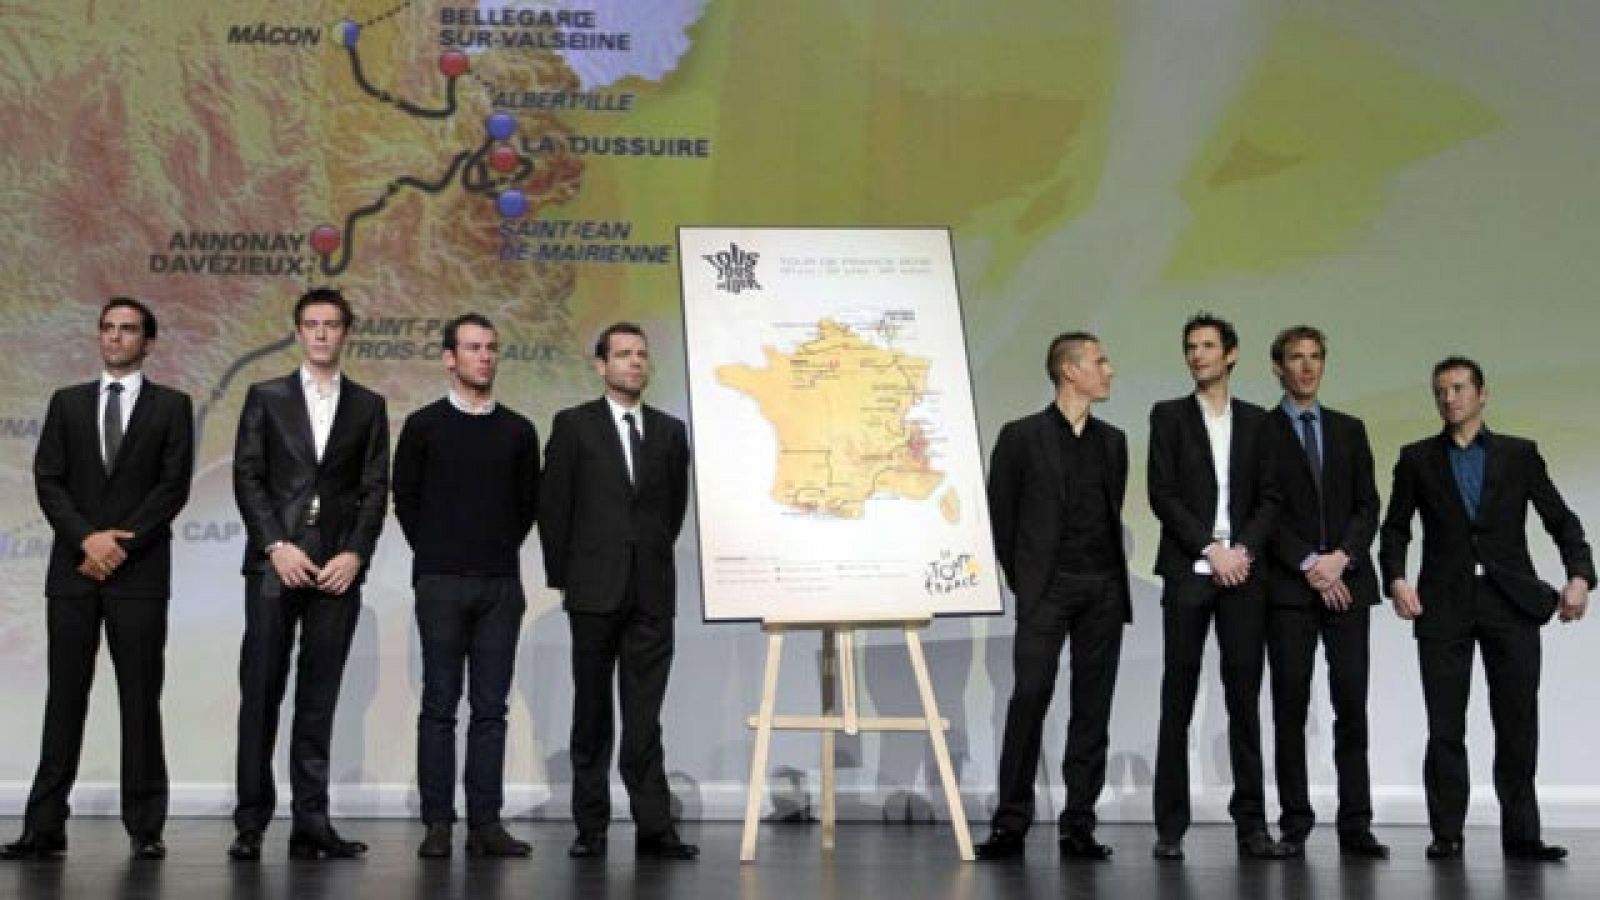 El Tour de Francia 2012 se ha presentado, pero no ha habido novedades respecto al recorrido que se hizo público días antes por un error informático